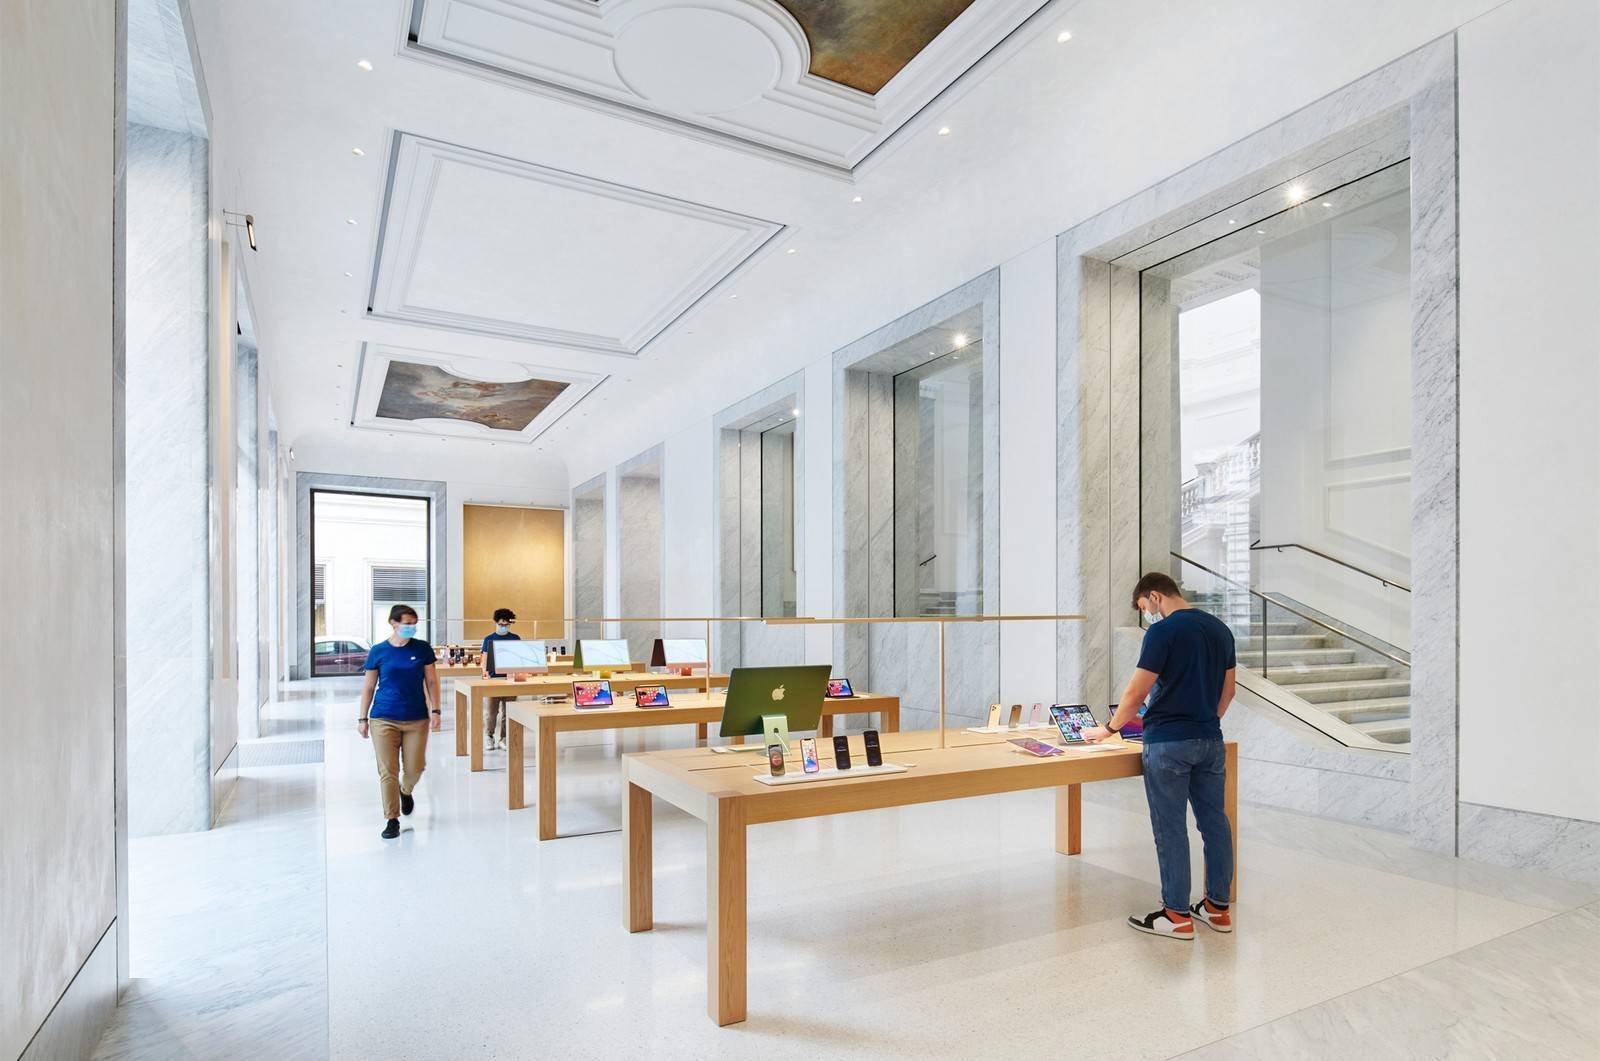 Apple Store罗马新店将开业向艺术和文化历史致敬 Via